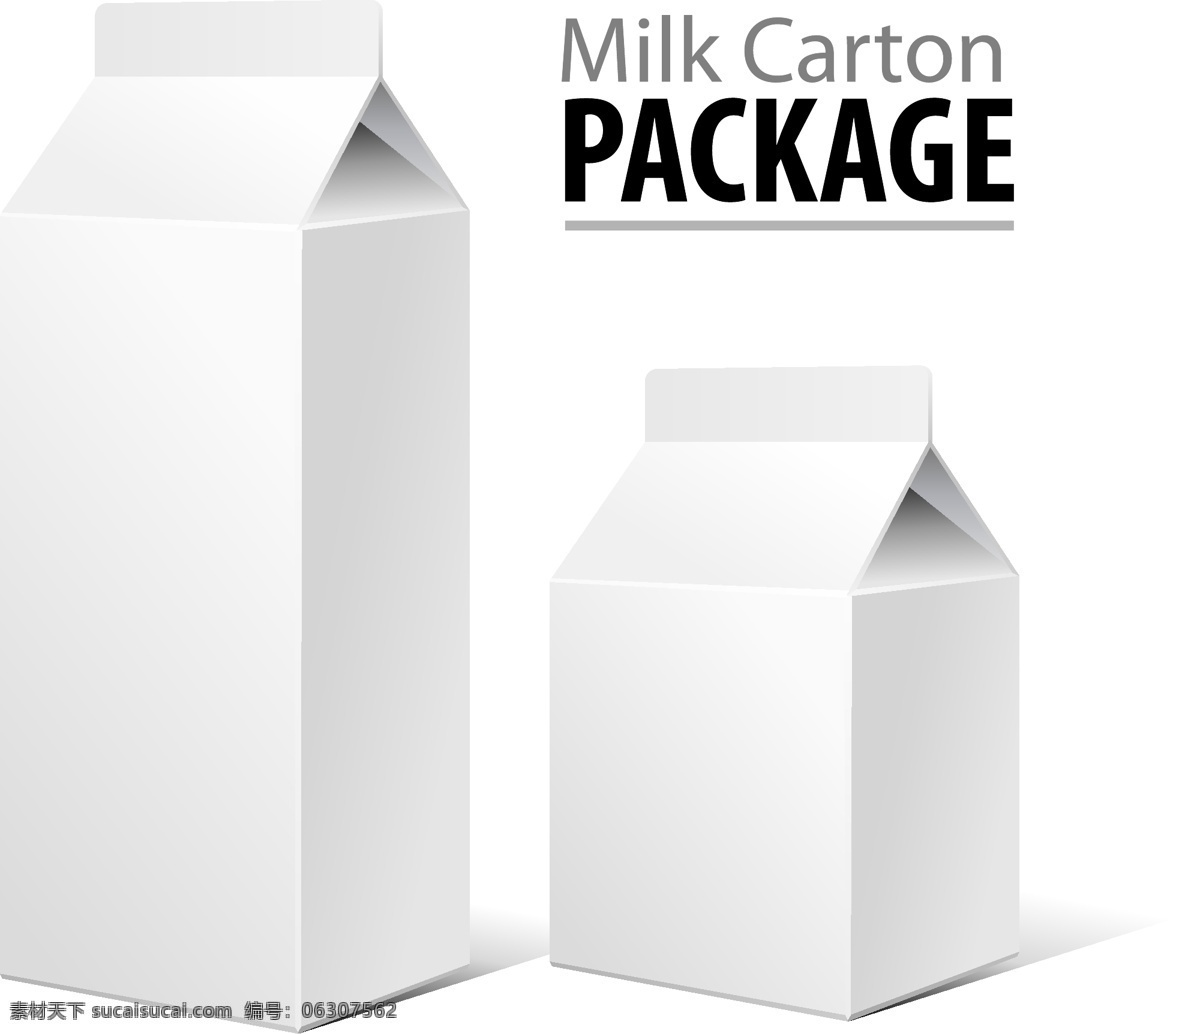 牛奶 盒 矢量 材料 牛奶盒 托盘 箱 空白纸箱 向量 矢量图 日常生活